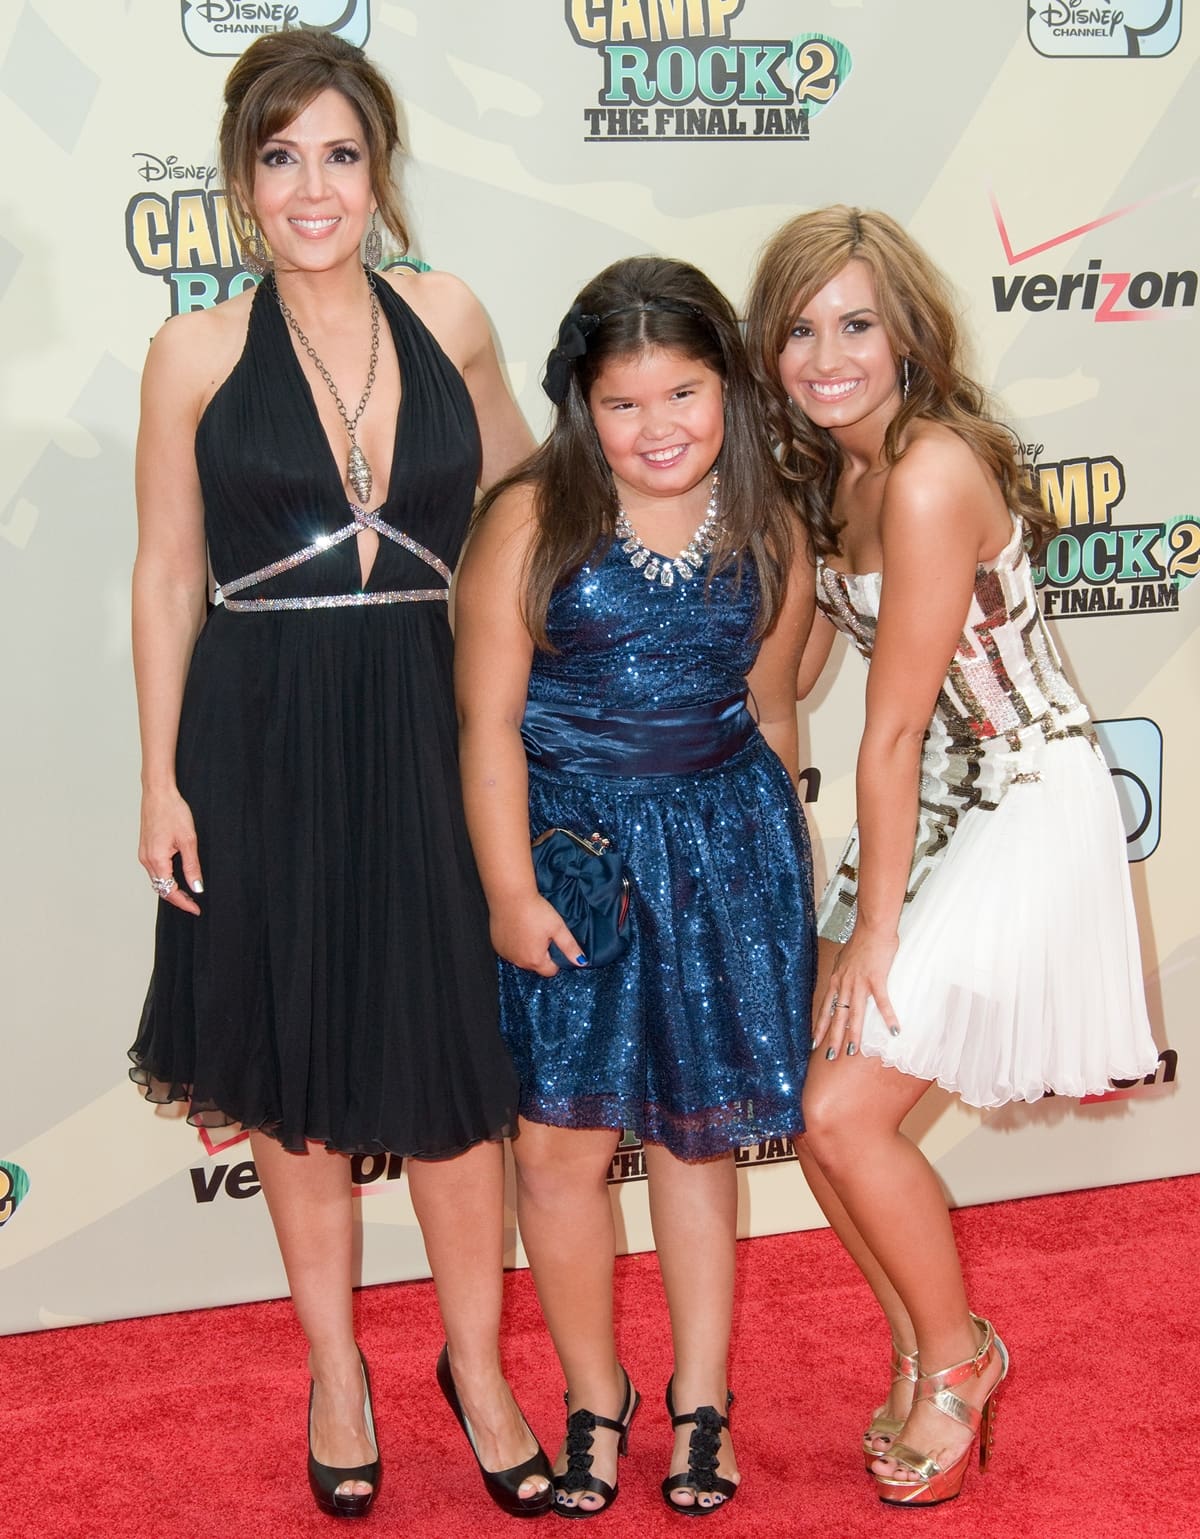 Maria Canals-Barrera, Demi's younger half-sister Madison De La Garza, and Demi Lovato attend the premiere of "Camp Rock 2: The Final Jam"